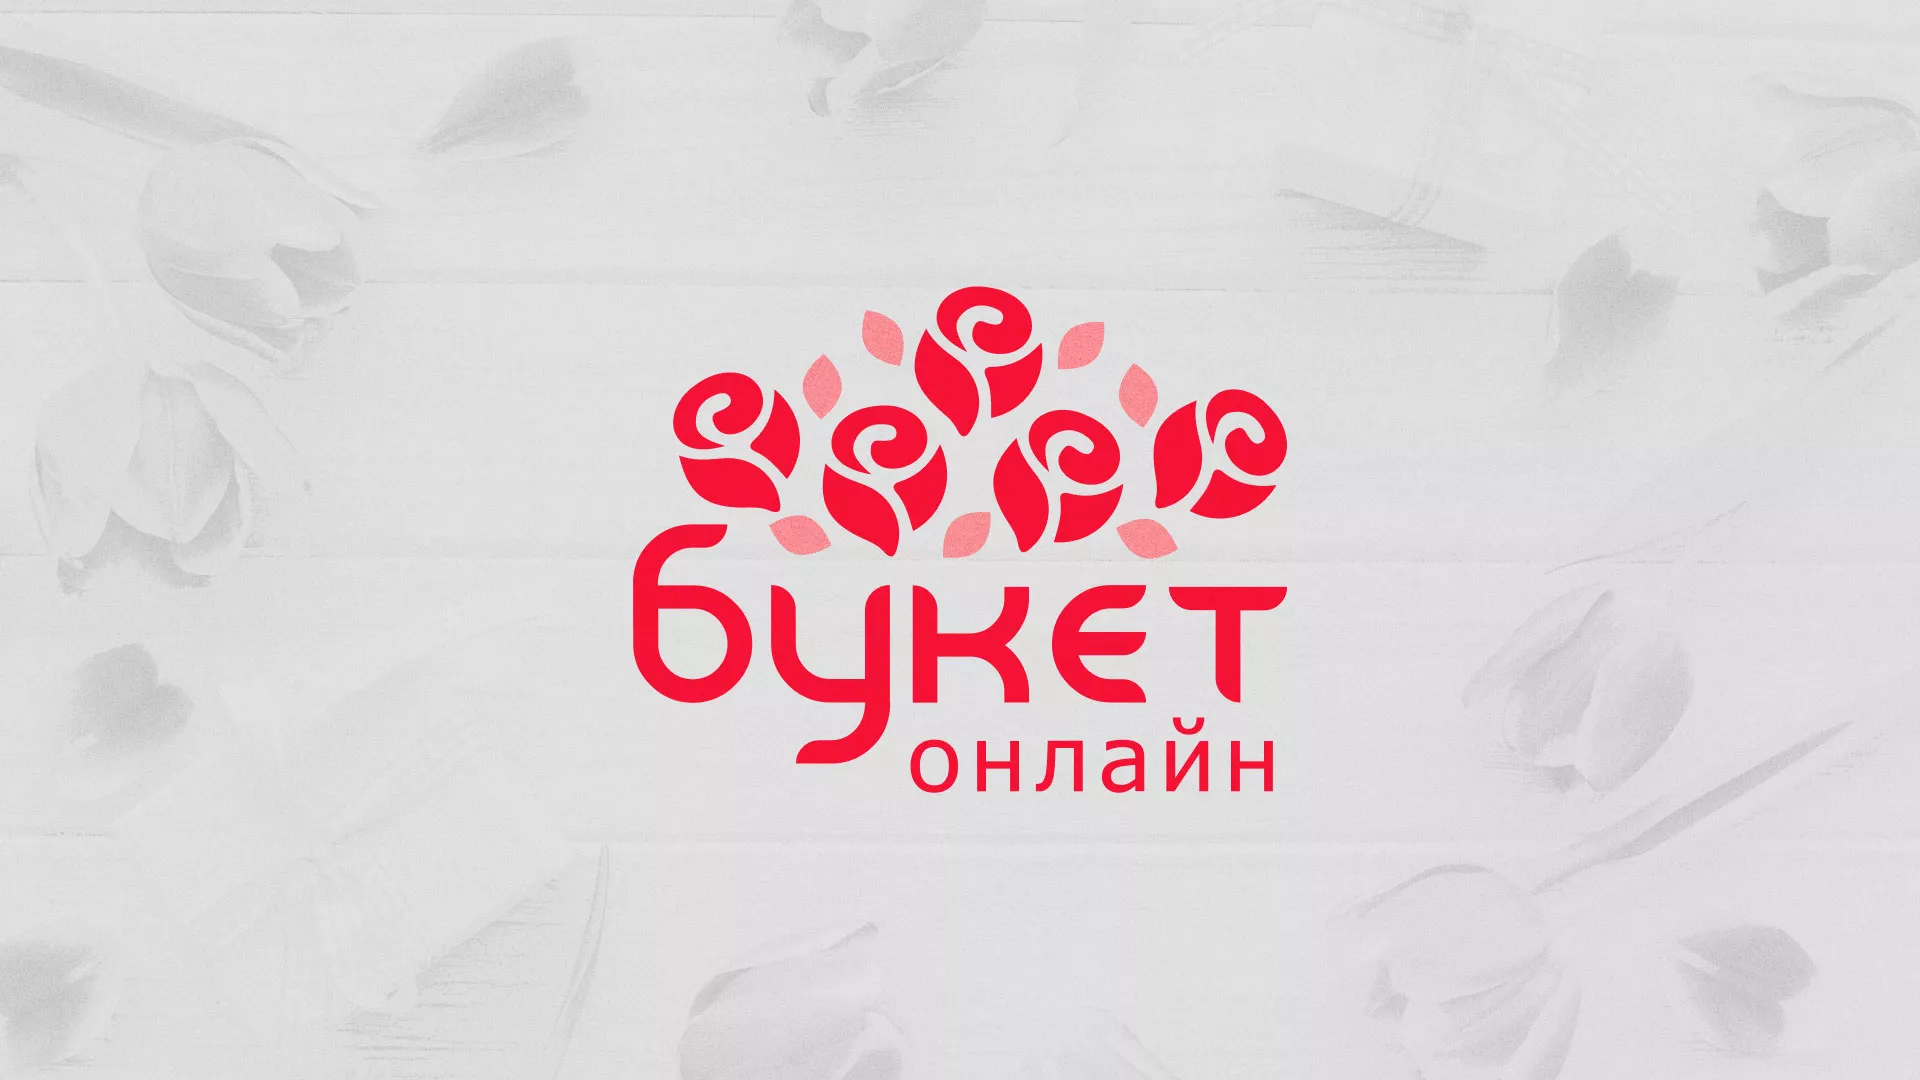 Создание интернет-магазина «Букет-онлайн» по цветам в Комсомольске-на-Амуре